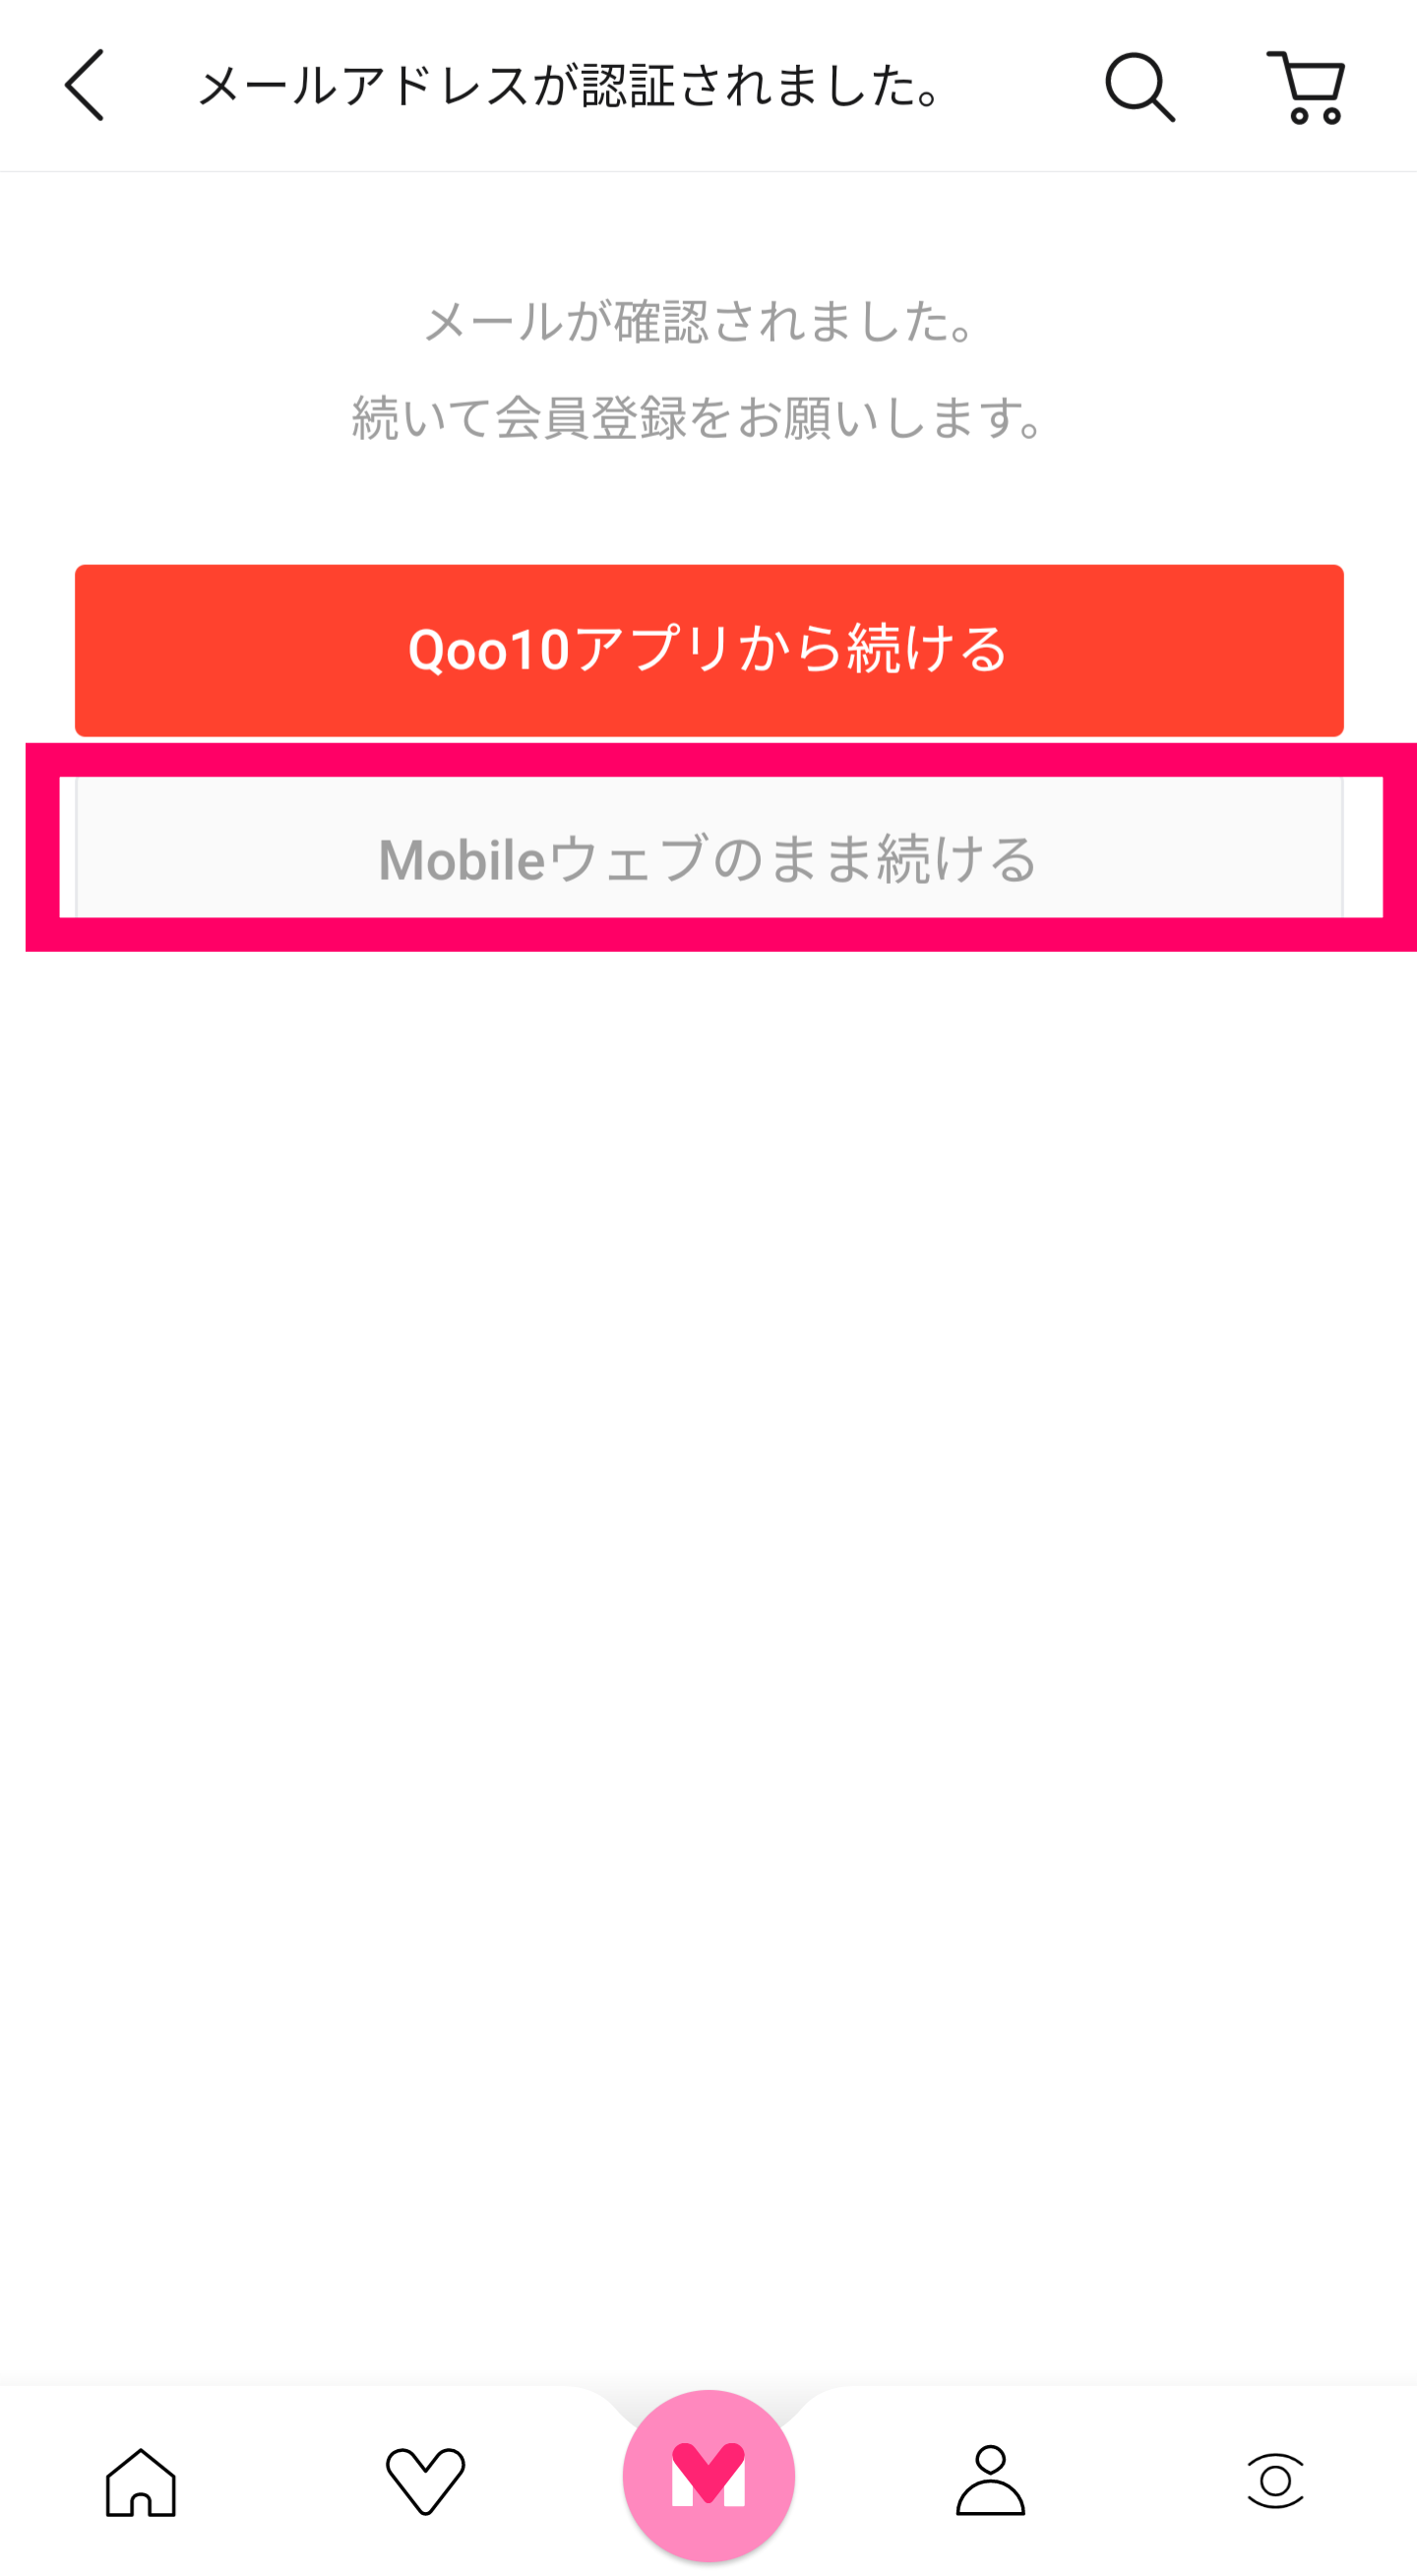 Qoo10-Mobileウェブで続ける